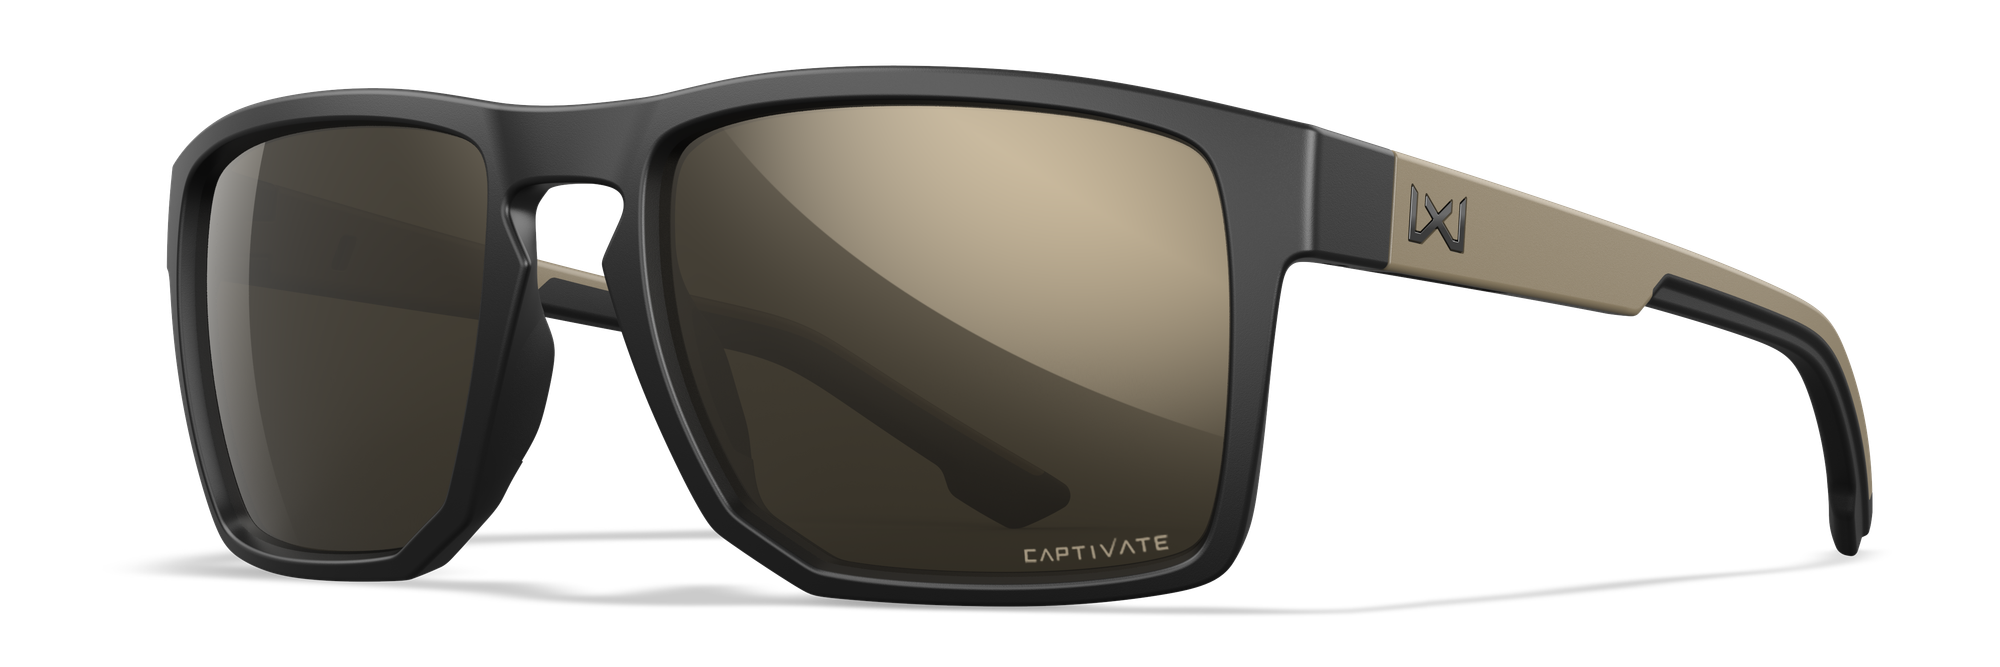  Coyote BP-13 משקפי שמש מקוטבים לקריאה (1.50), שחור : ביגוד,  נעליים ותכשיטים